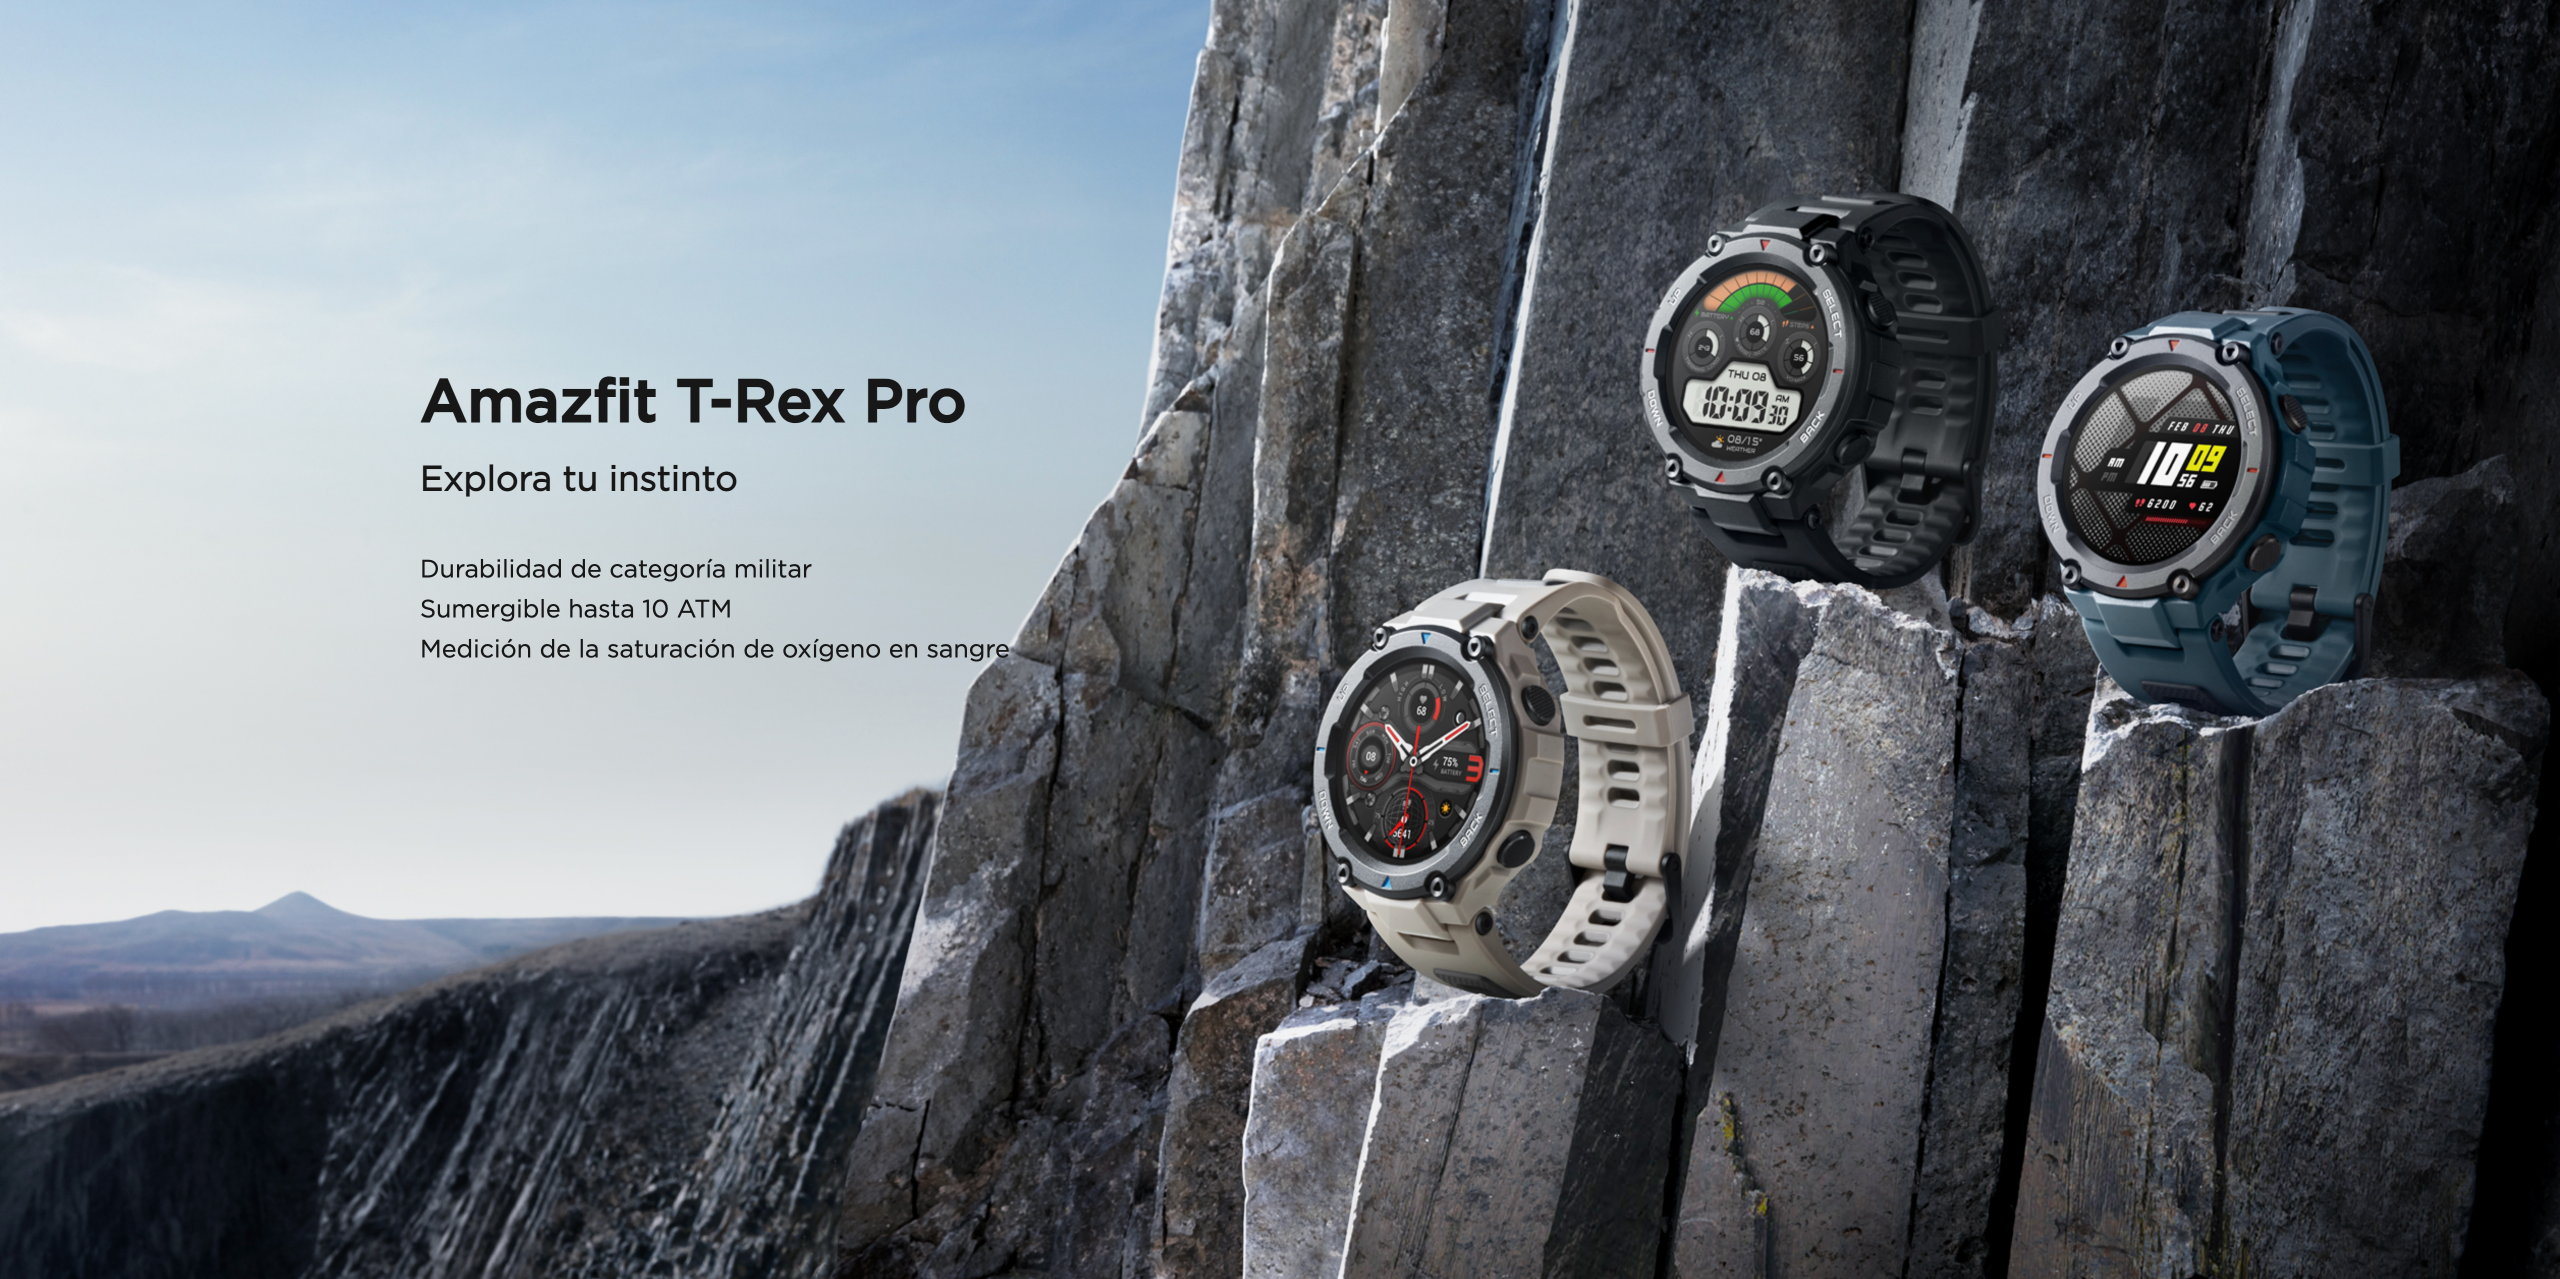  Amazfit T-Rex Pro - Reloj inteligente para hombre, resistente reloj  GPS para exteriores, duración de la batería de 18 días, 15 certificados  estándar militar, más de 100 modos deportivos, 10 ATM, : Electrónica